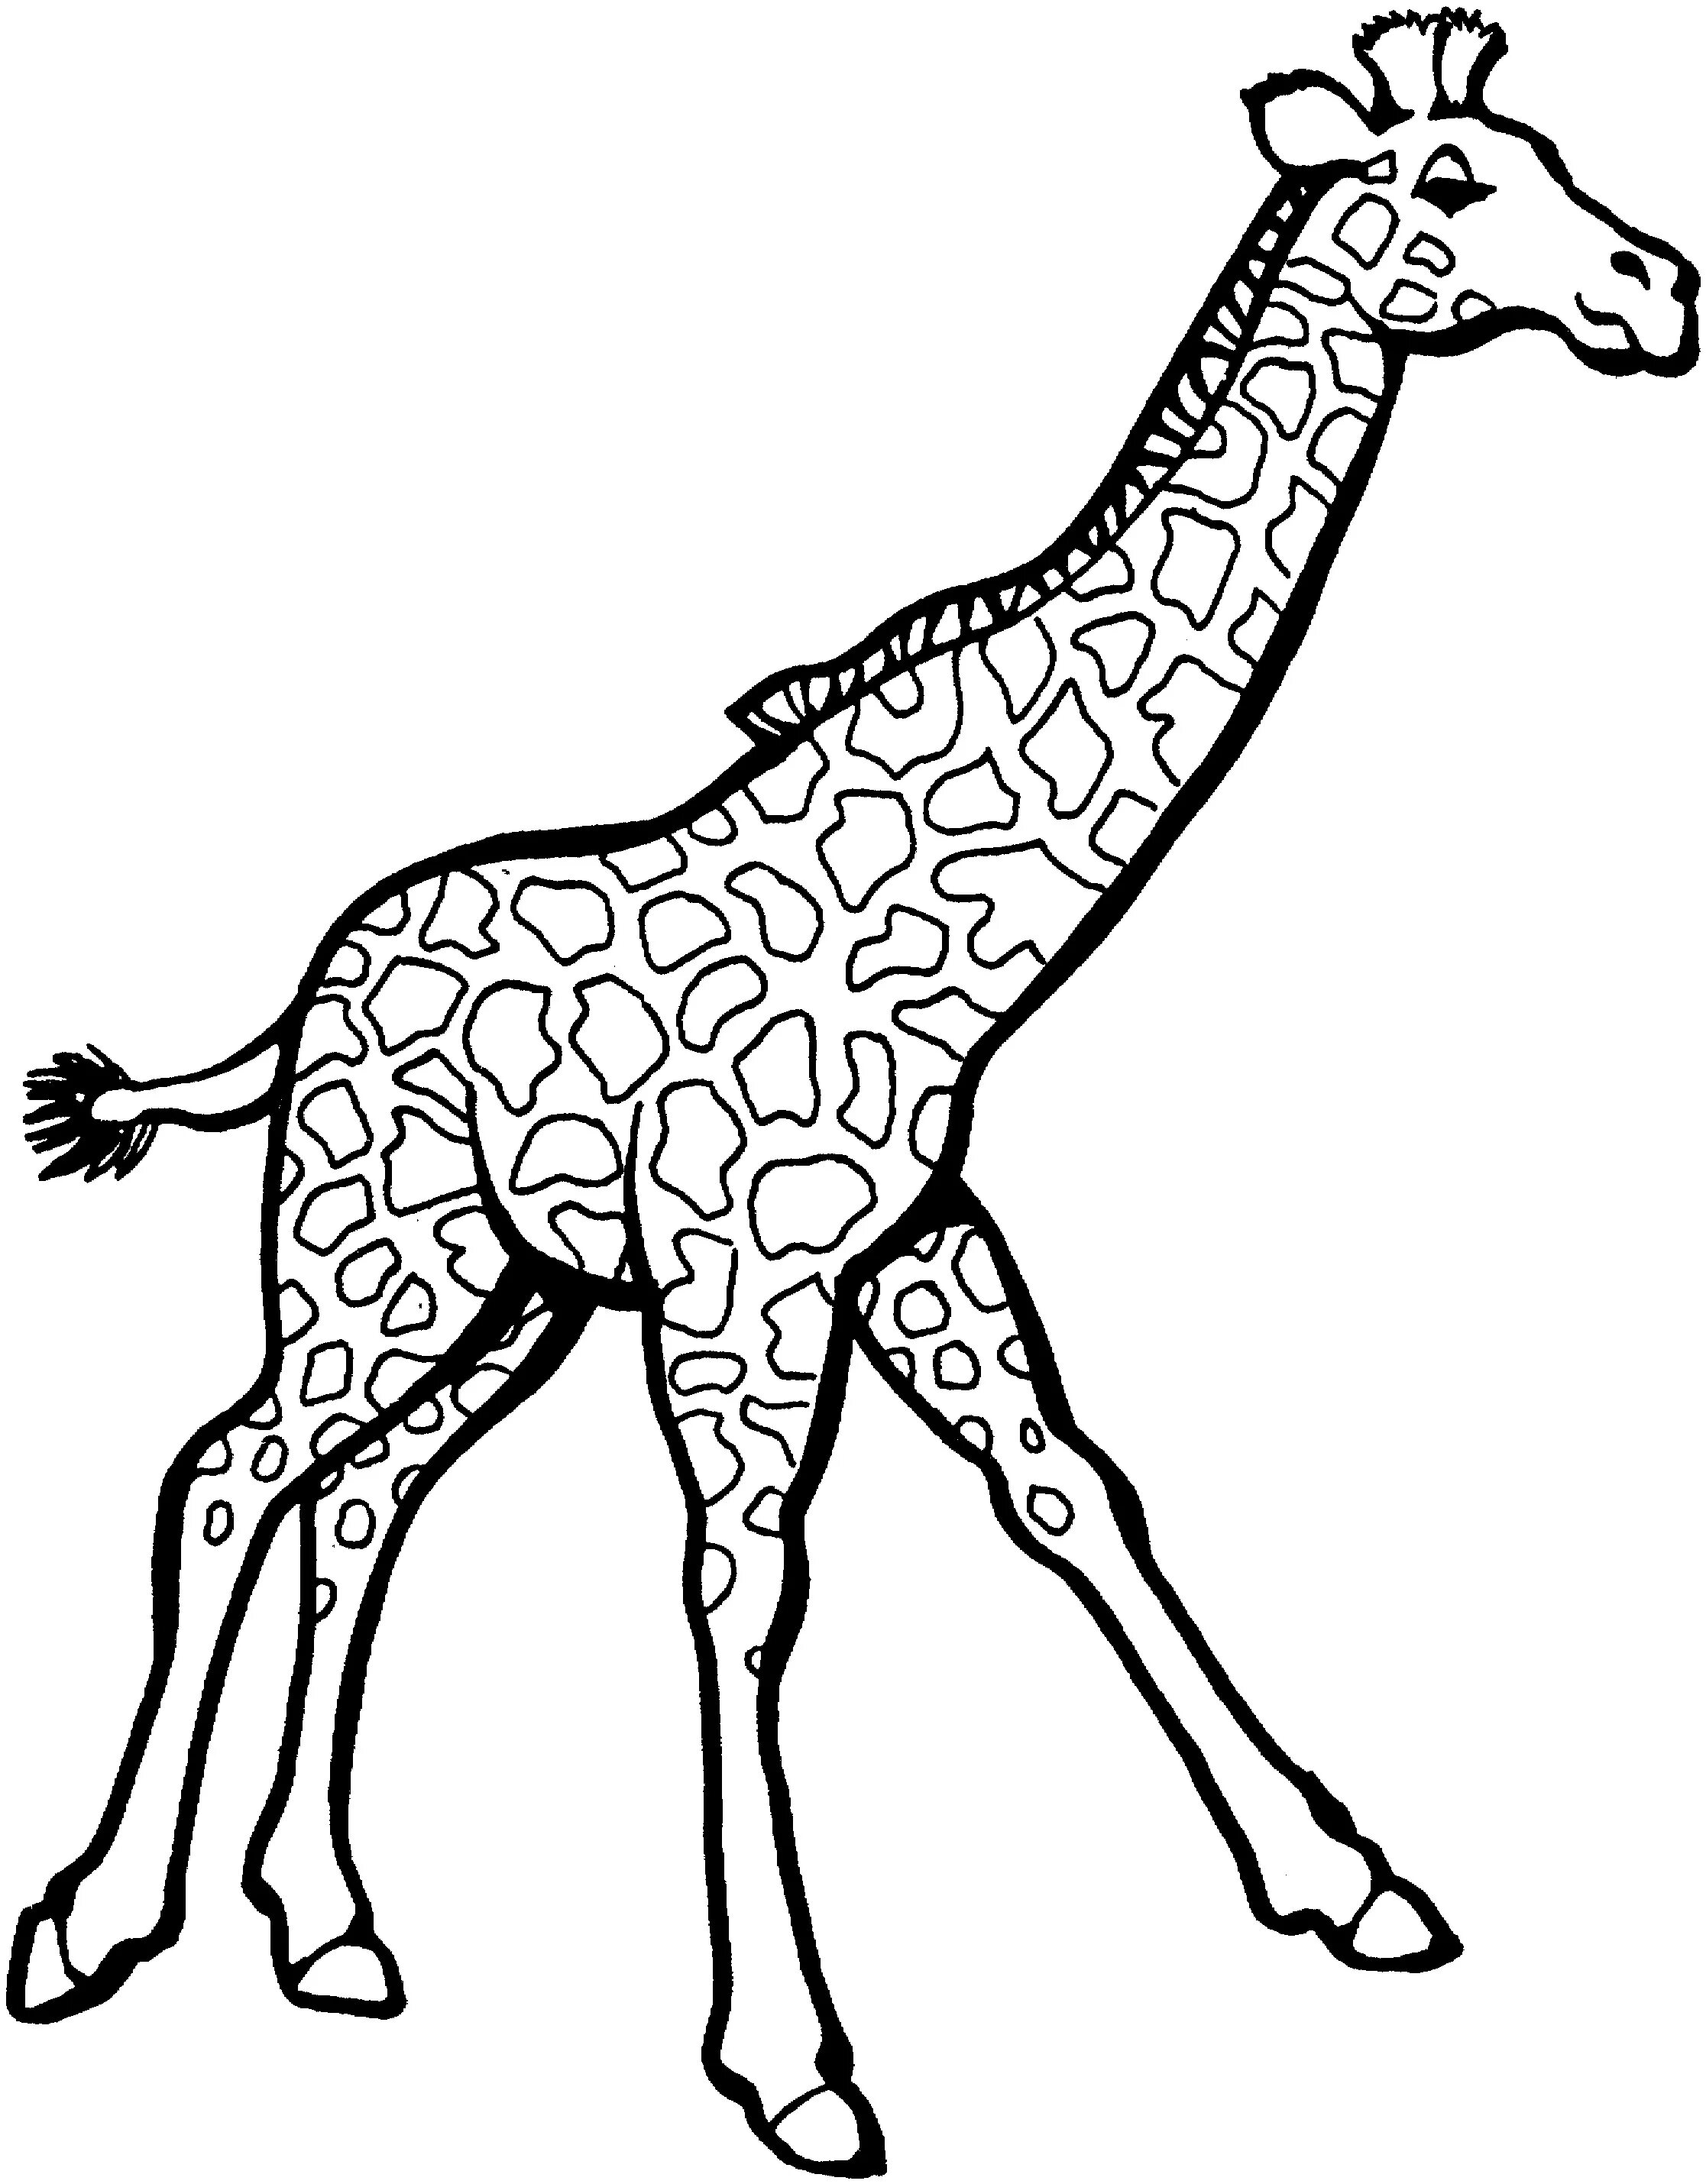 Захватывающая раскраска жирафа для маленьких учеников